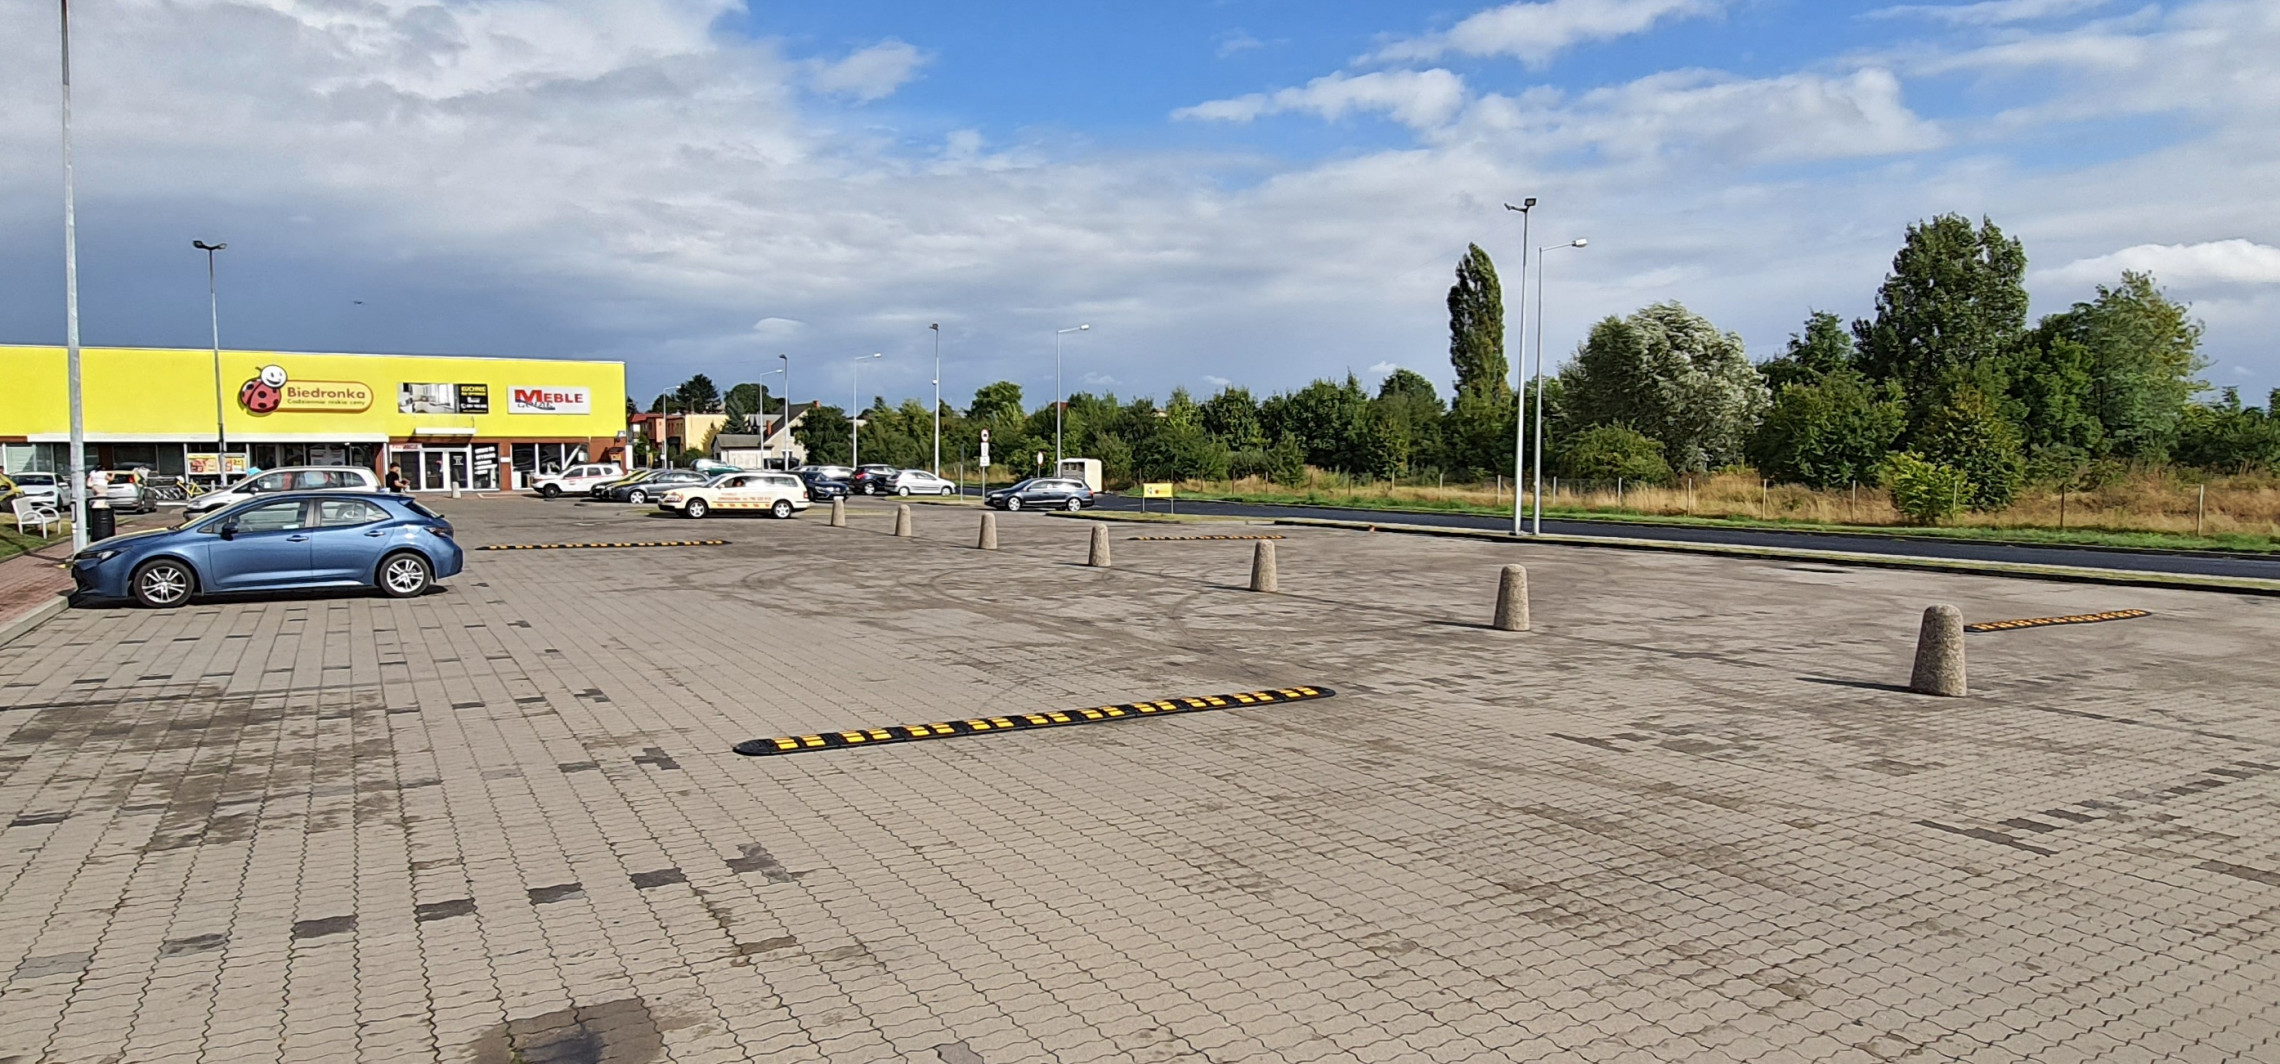 Inowrocław - Zmiany na parkingu. Koniec z kręceniem bączków